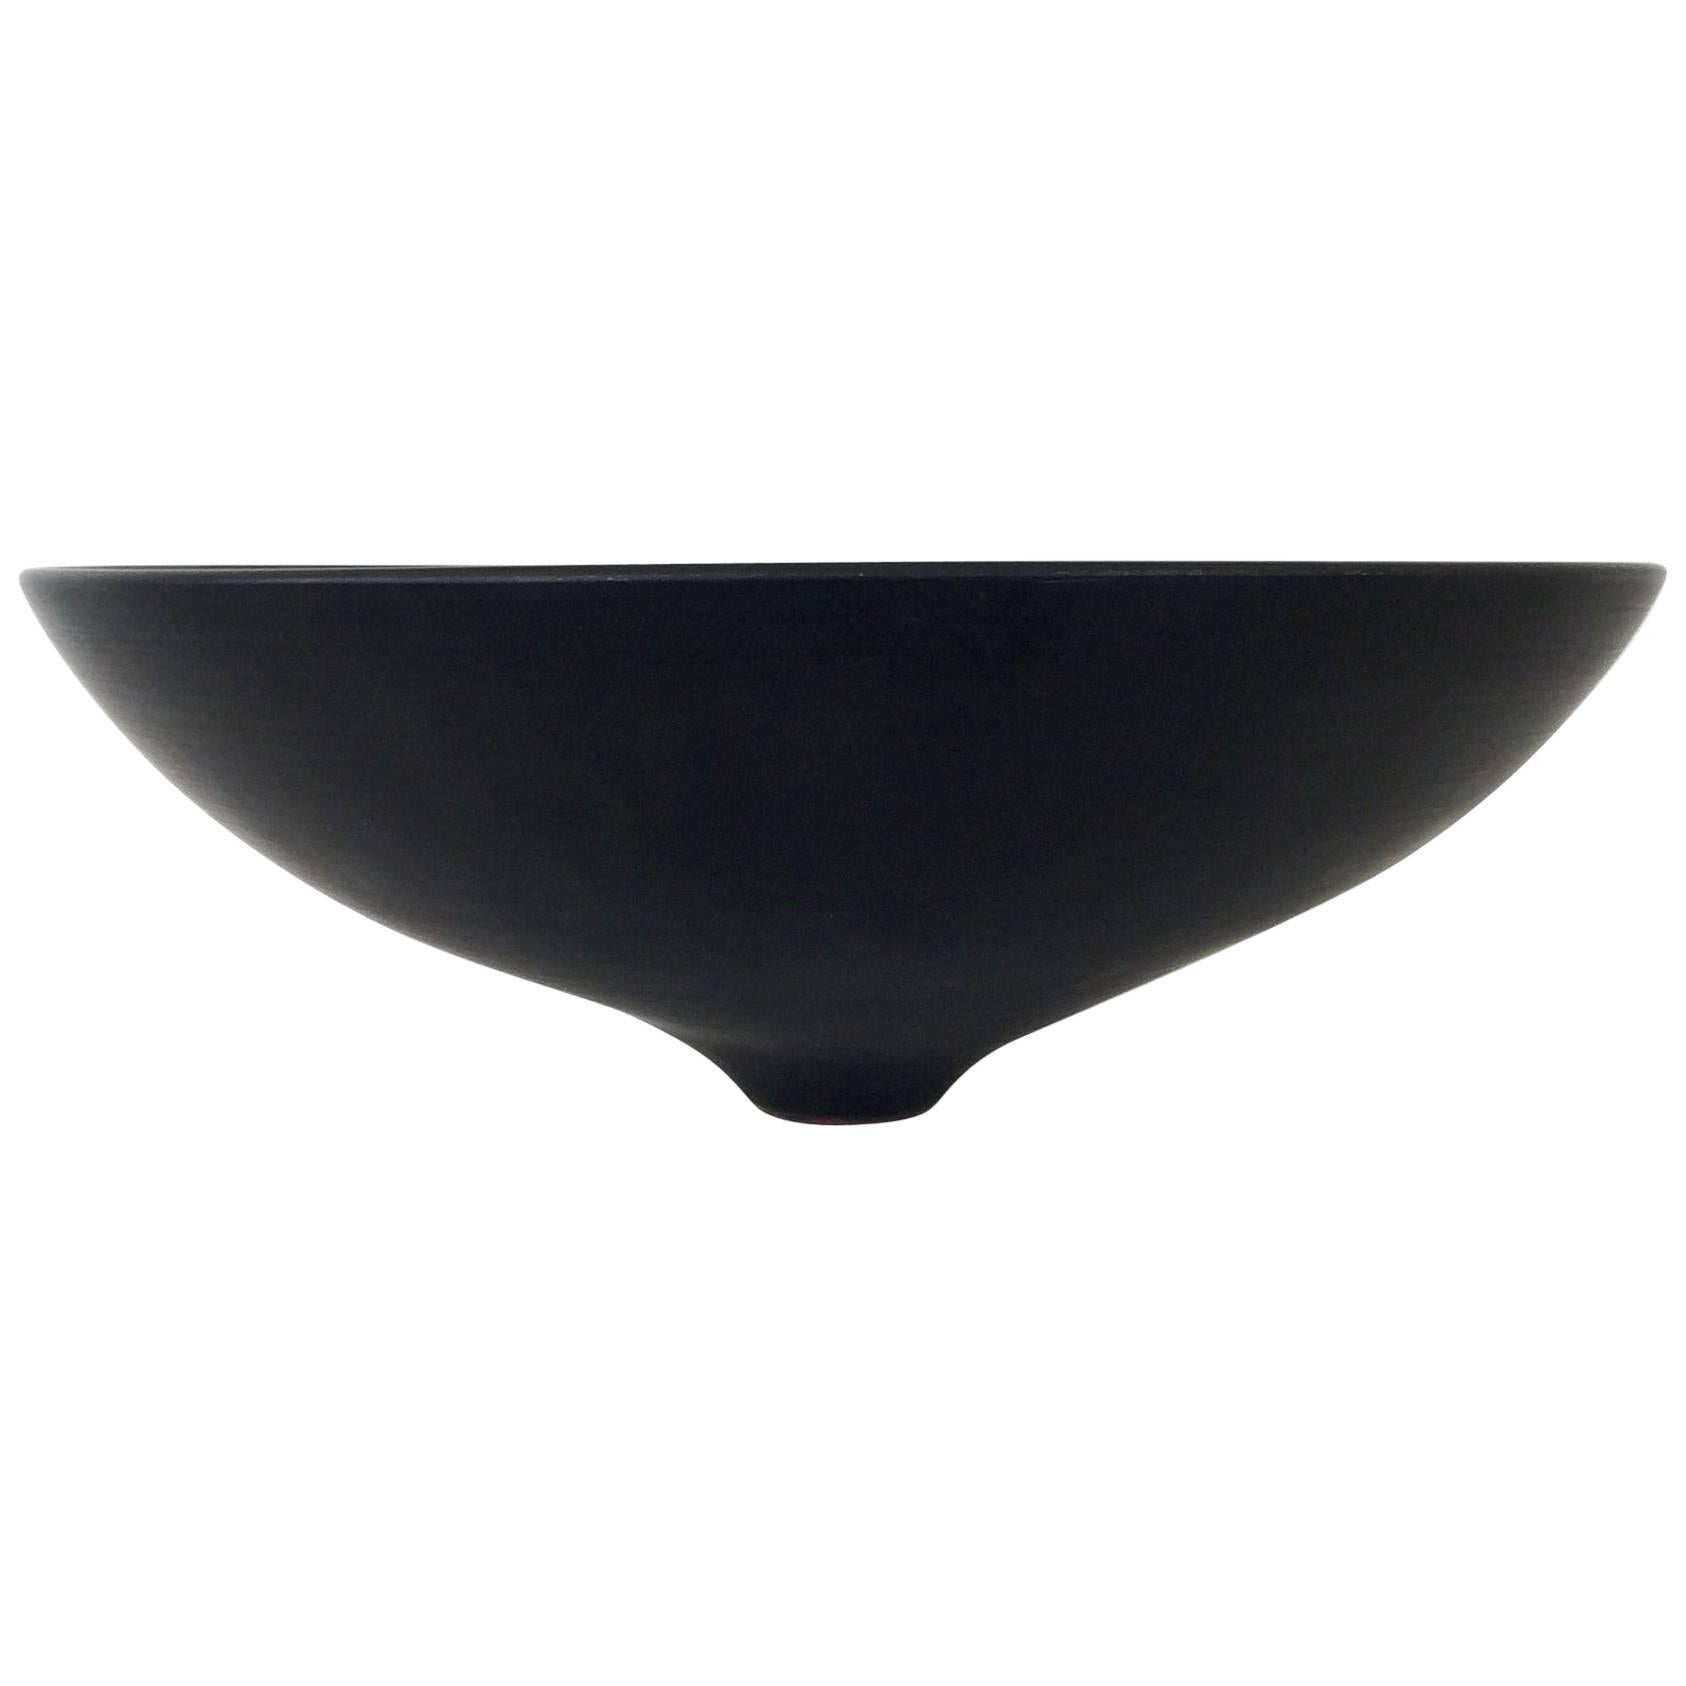  Lampecco Black Ceramic Bowl, circa 1960, Belgium